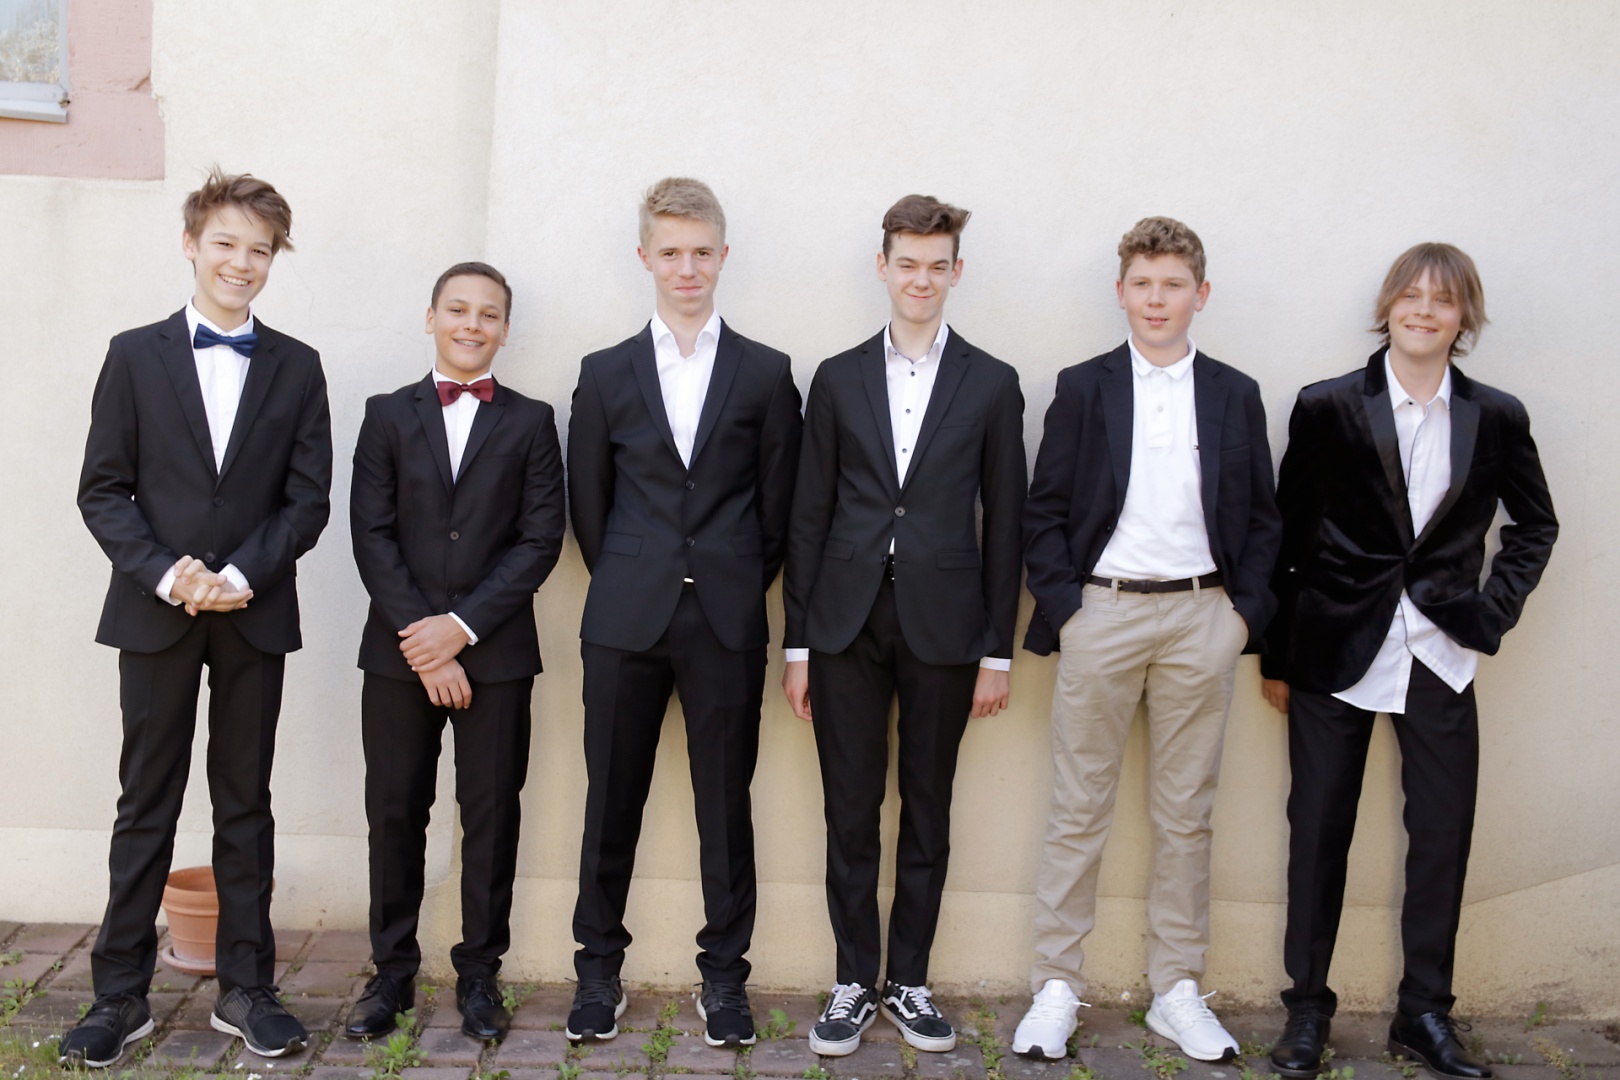 Die sechs Jungs sind vorwiegend klassisch in schwarz und weiß zu ihrer Konfirmation gekleidet